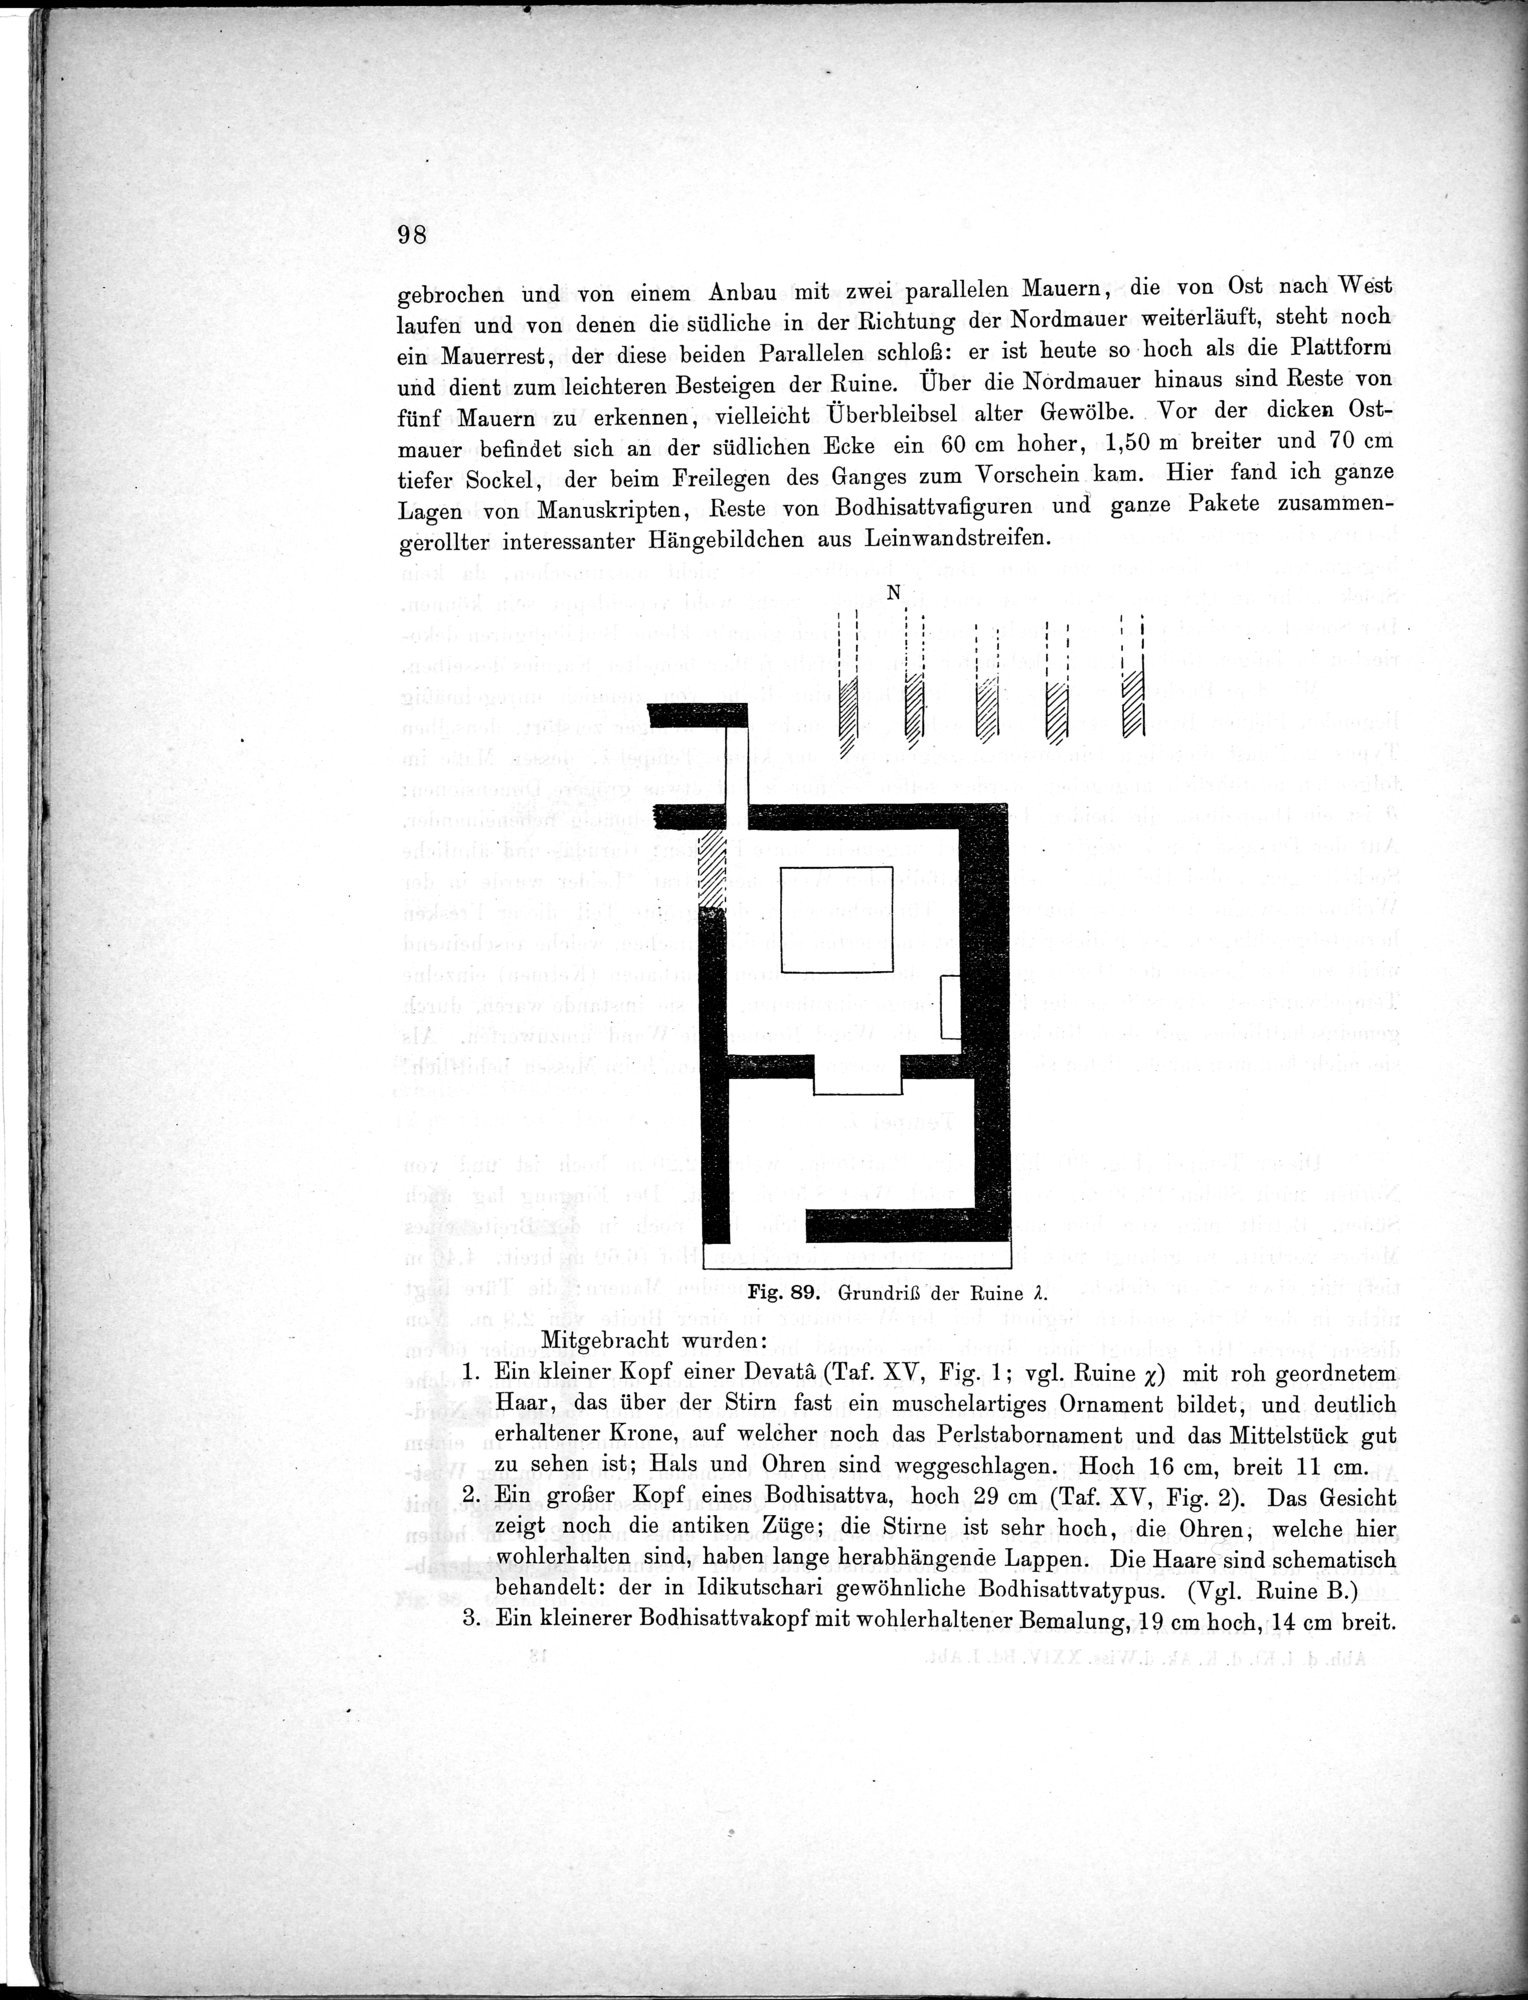 Bericht über archäologische Arbeiten in Idikutschari und Umgebung im Winter 1902-1903 : vol.1 / Page 108 (Grayscale High Resolution Image)